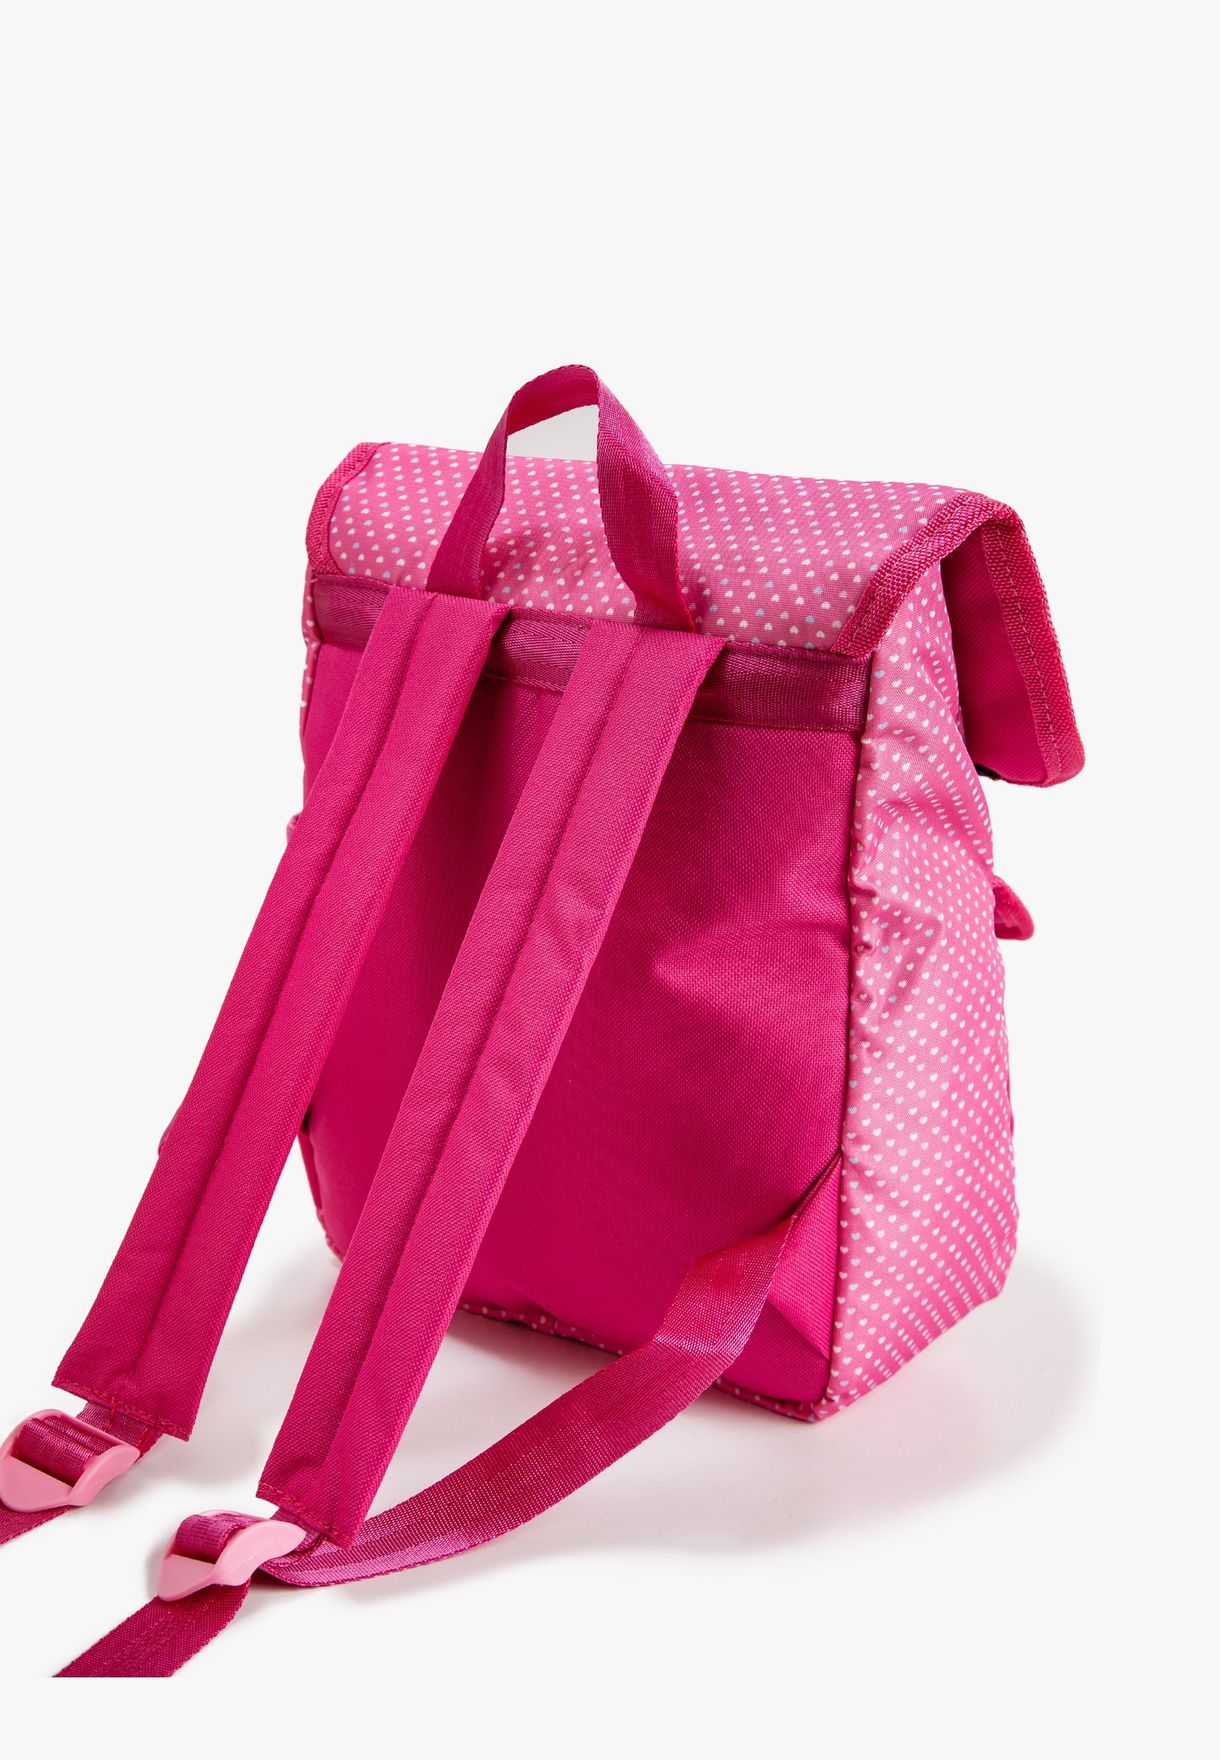 Polka-Dot Backpack